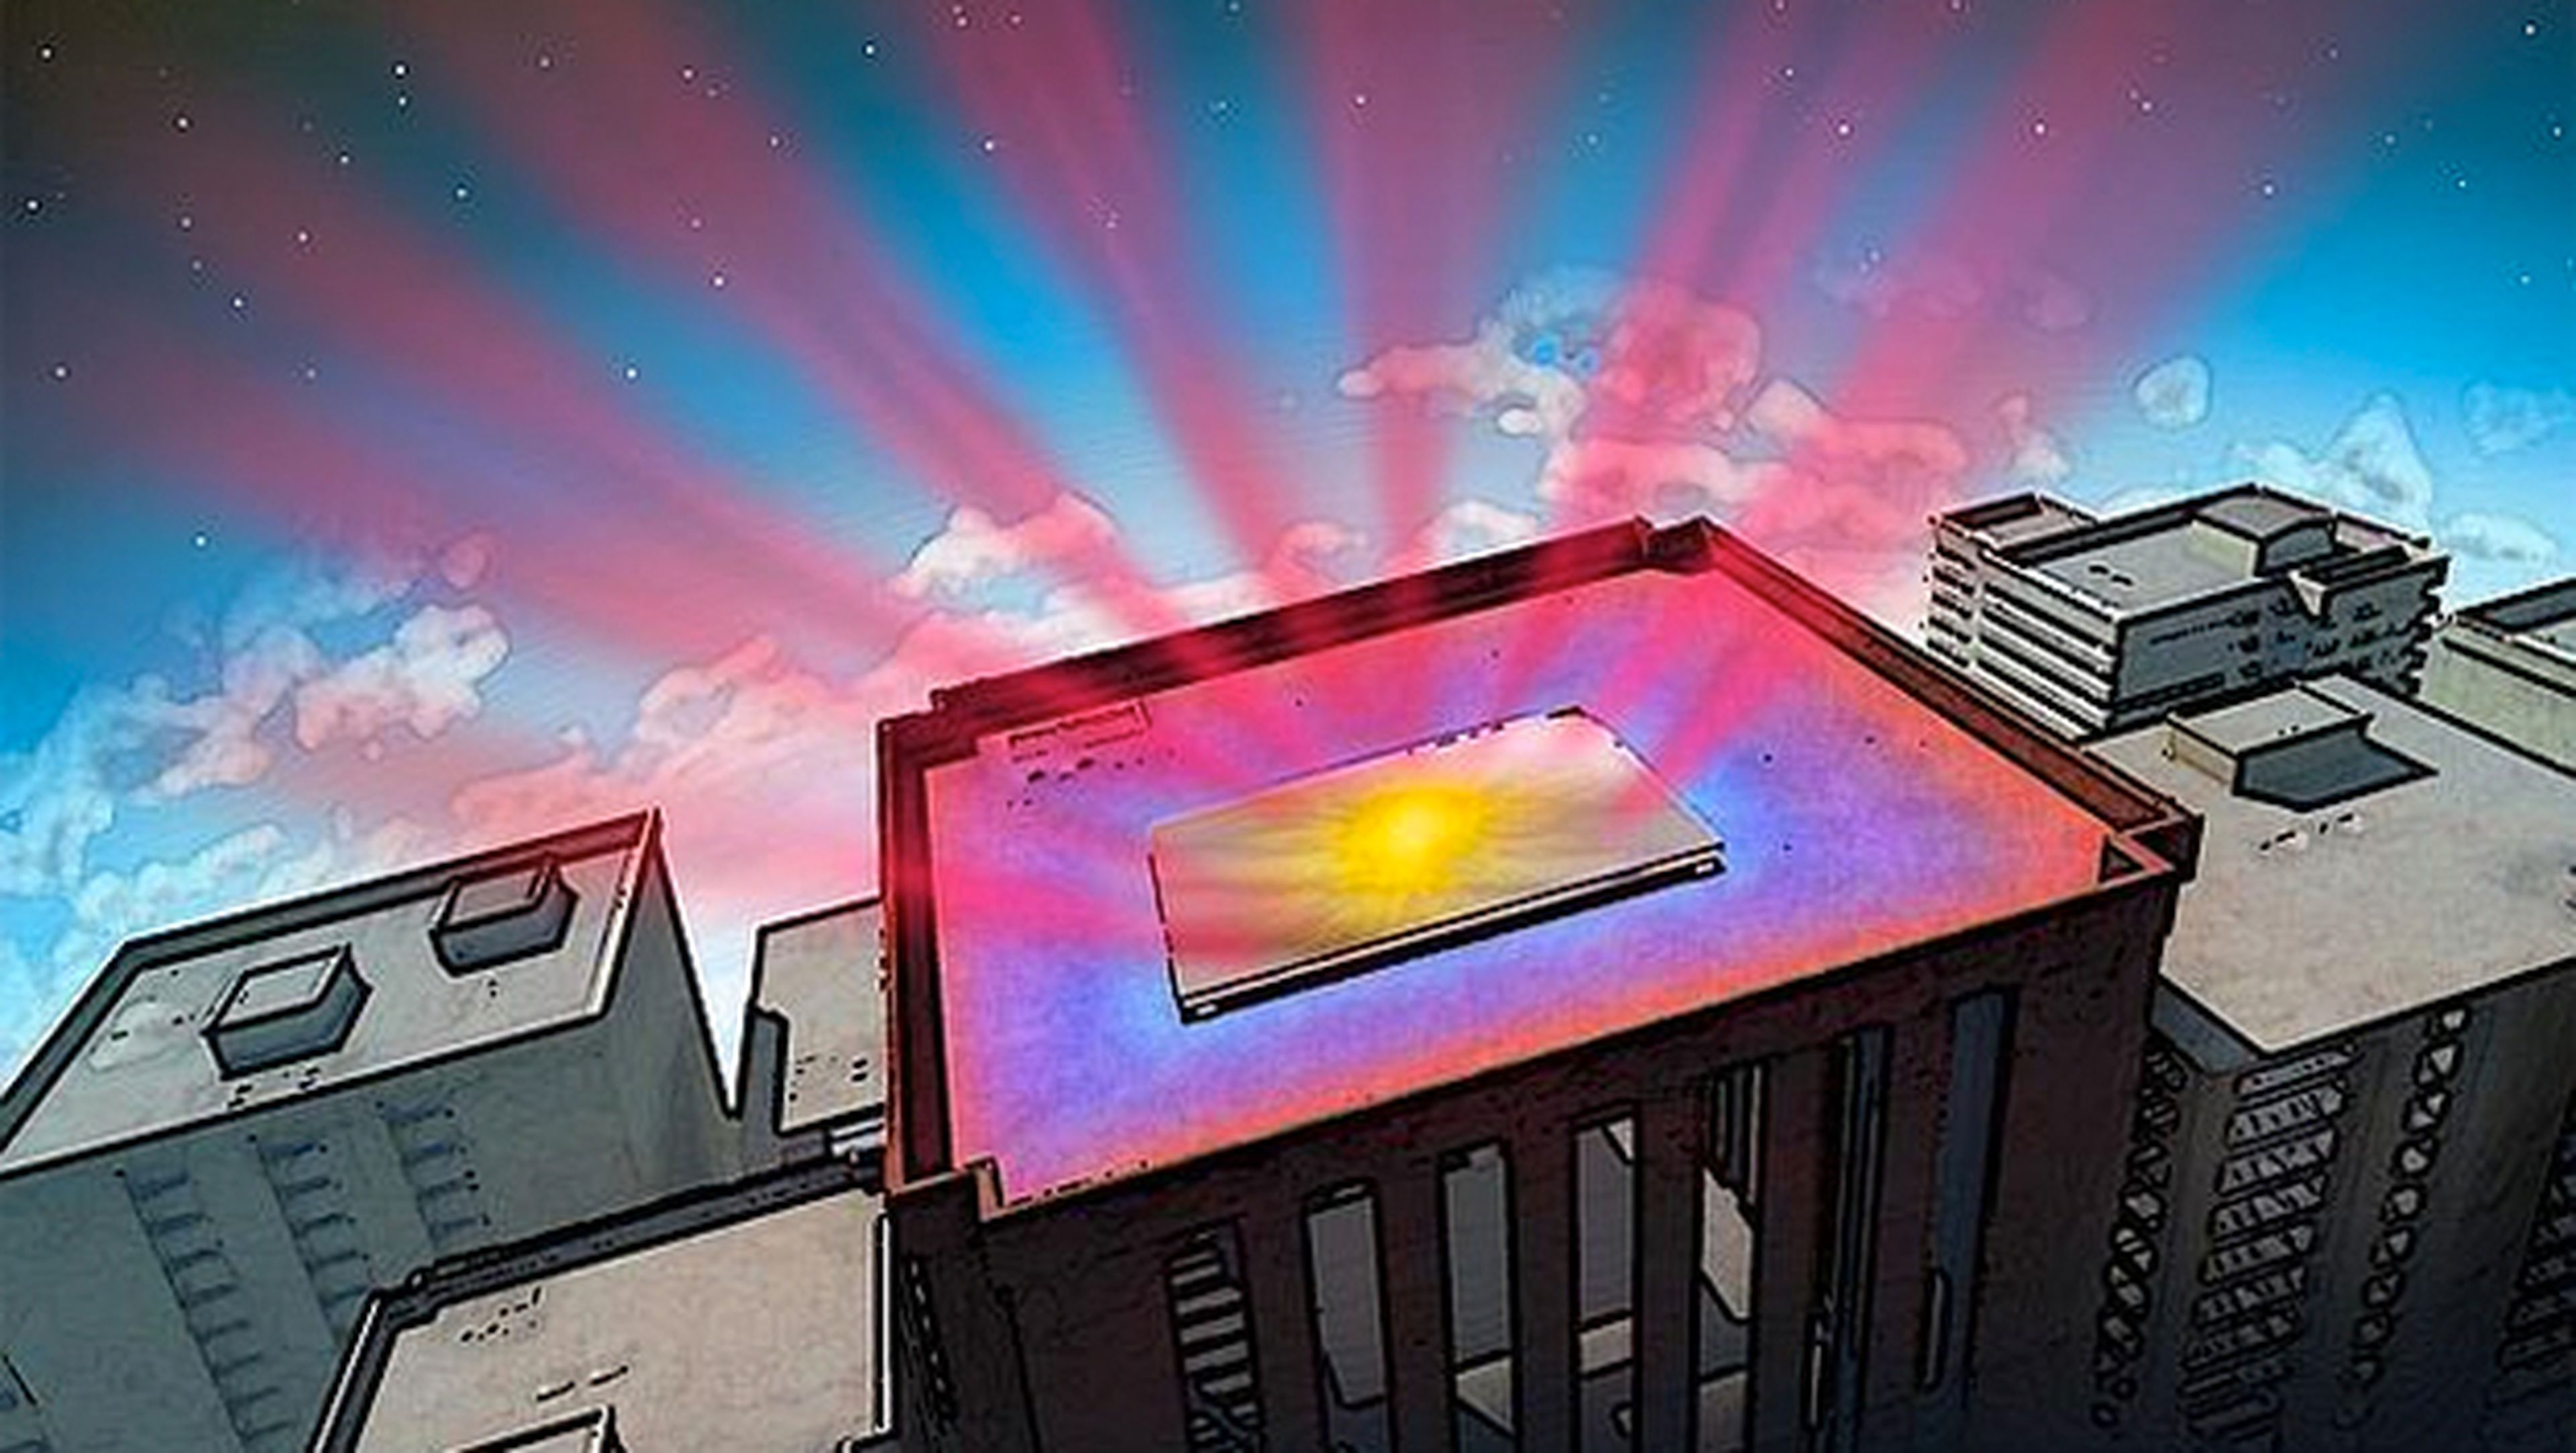 El nuevo material elimina el calor de los edificios: enfriamiento fotónico radiante